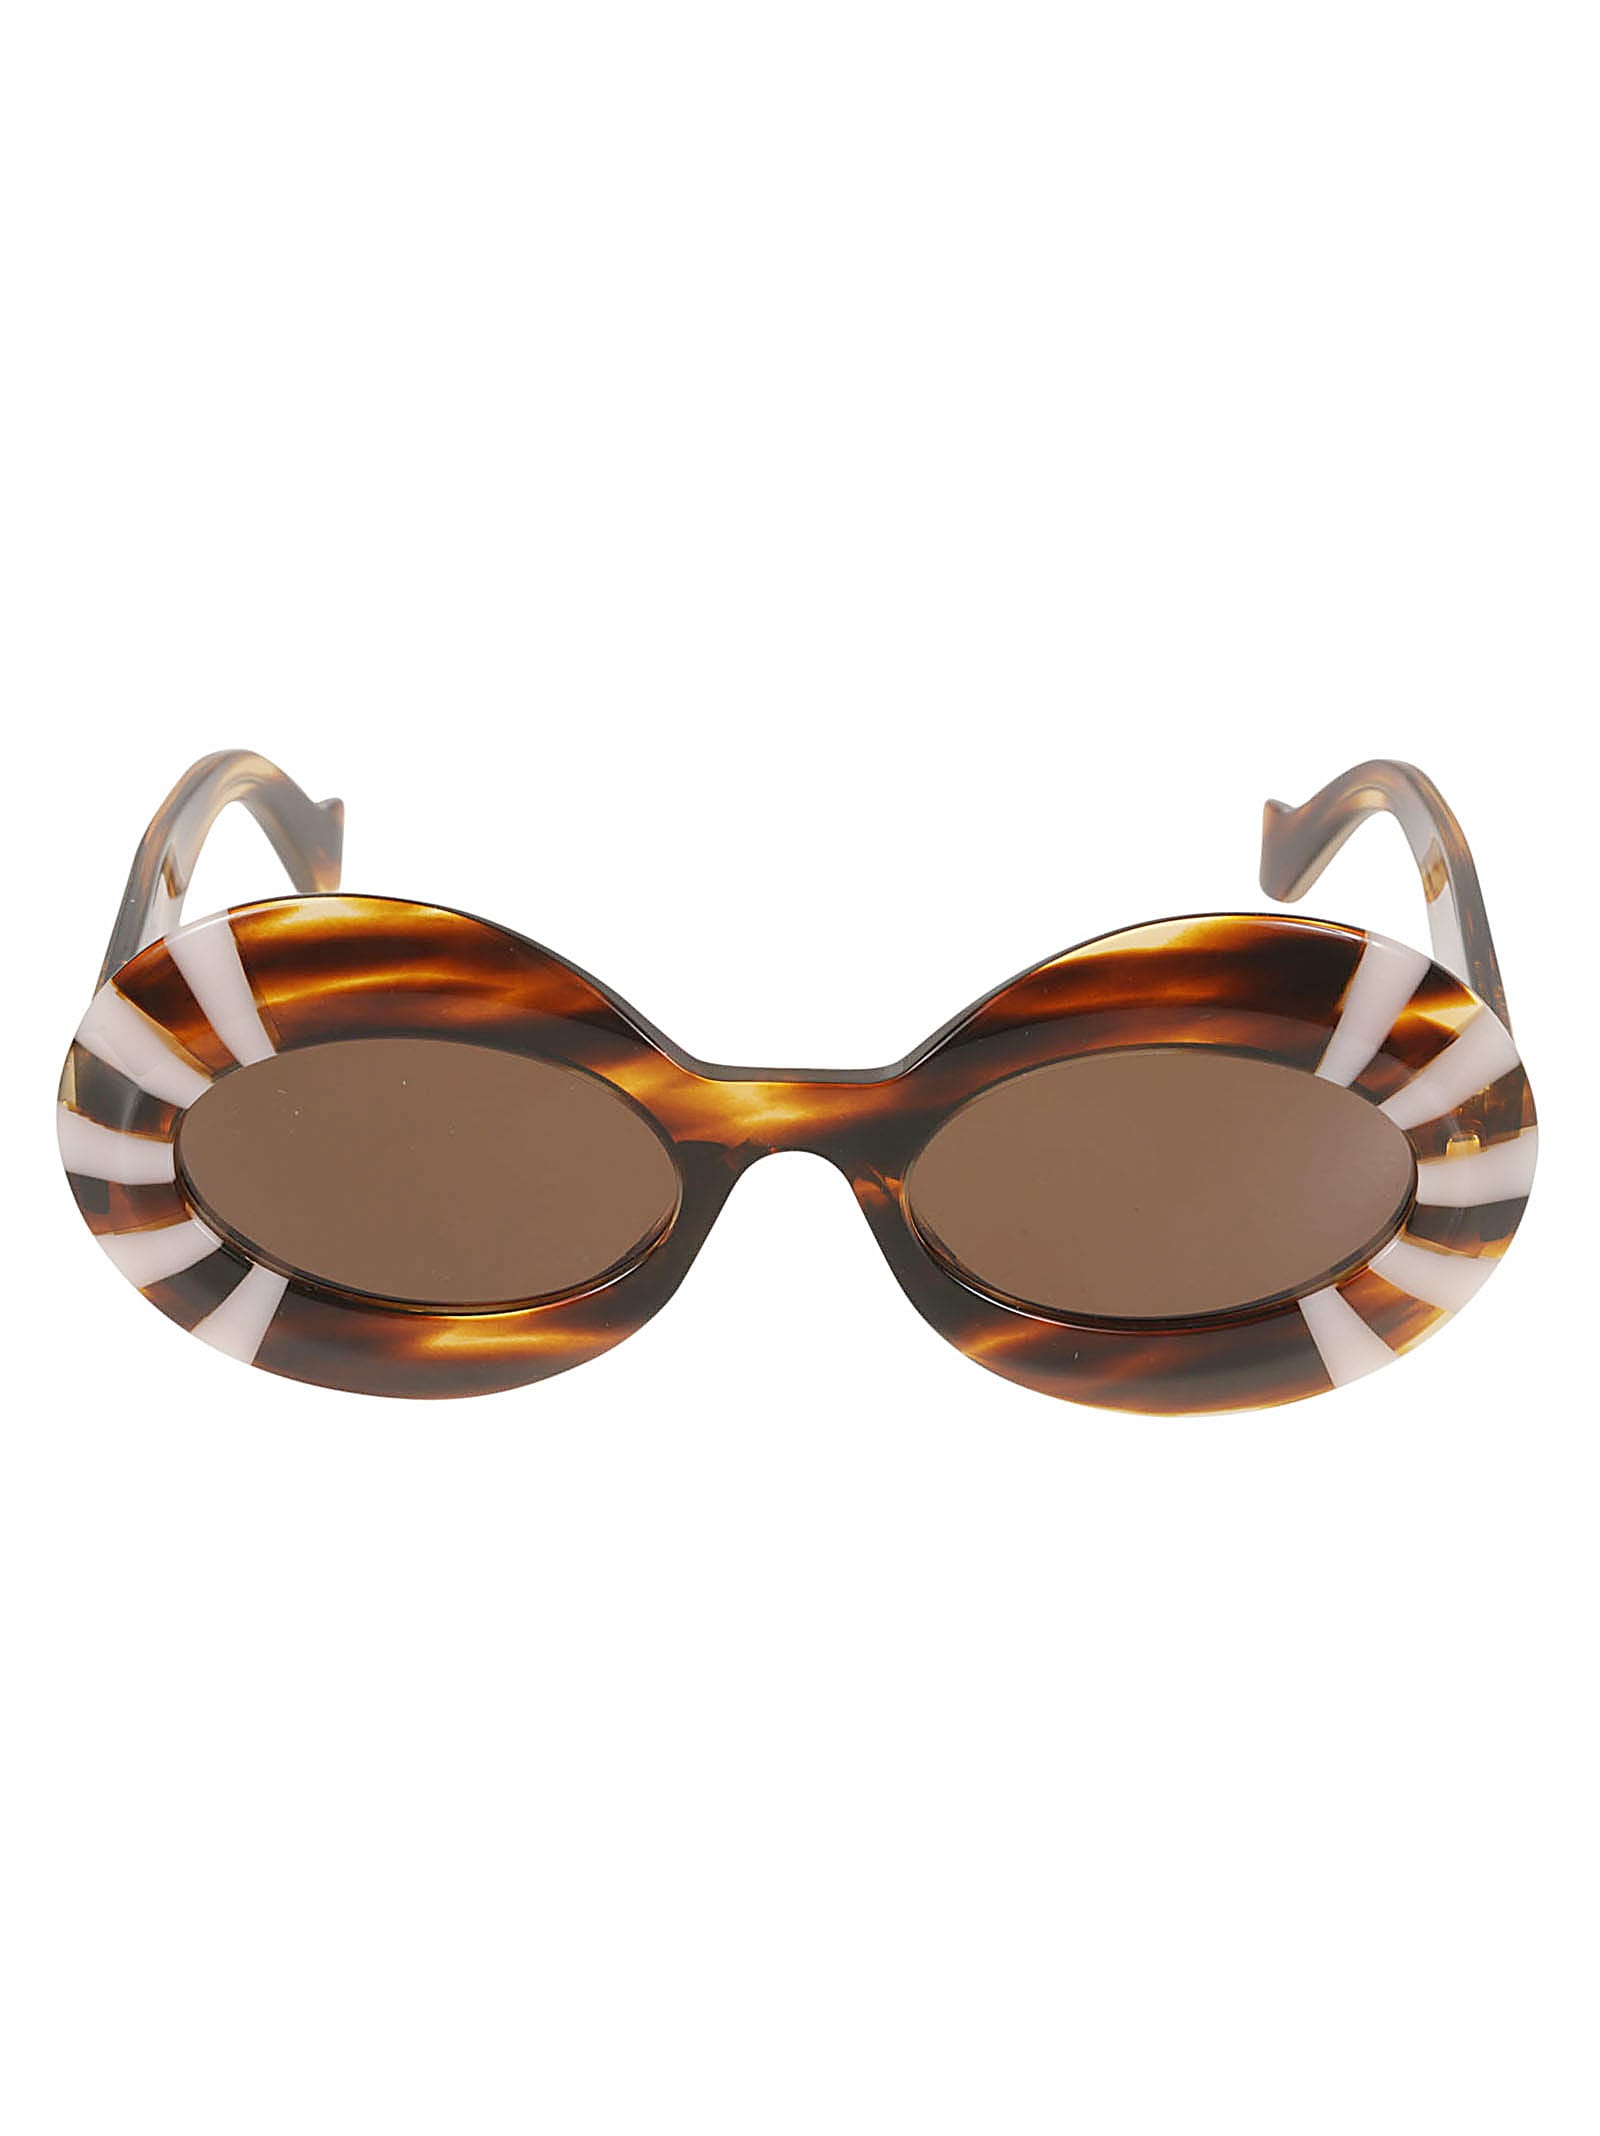 Loewe Round Thick Sunglasses